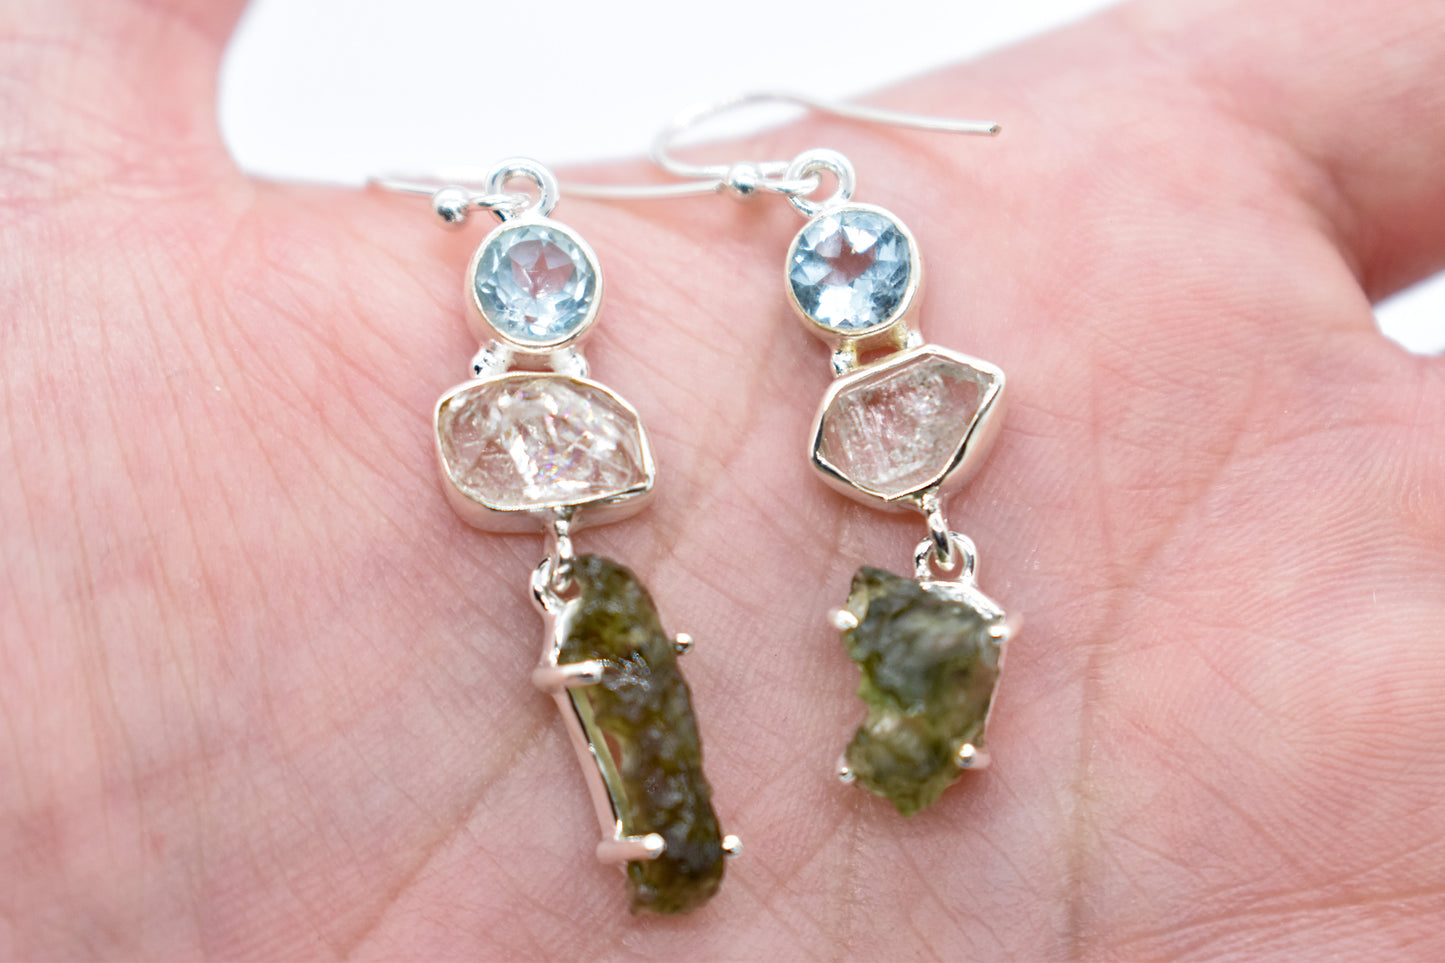 Herkimer Diamond, Blue Topaz and Moldavite Earrings